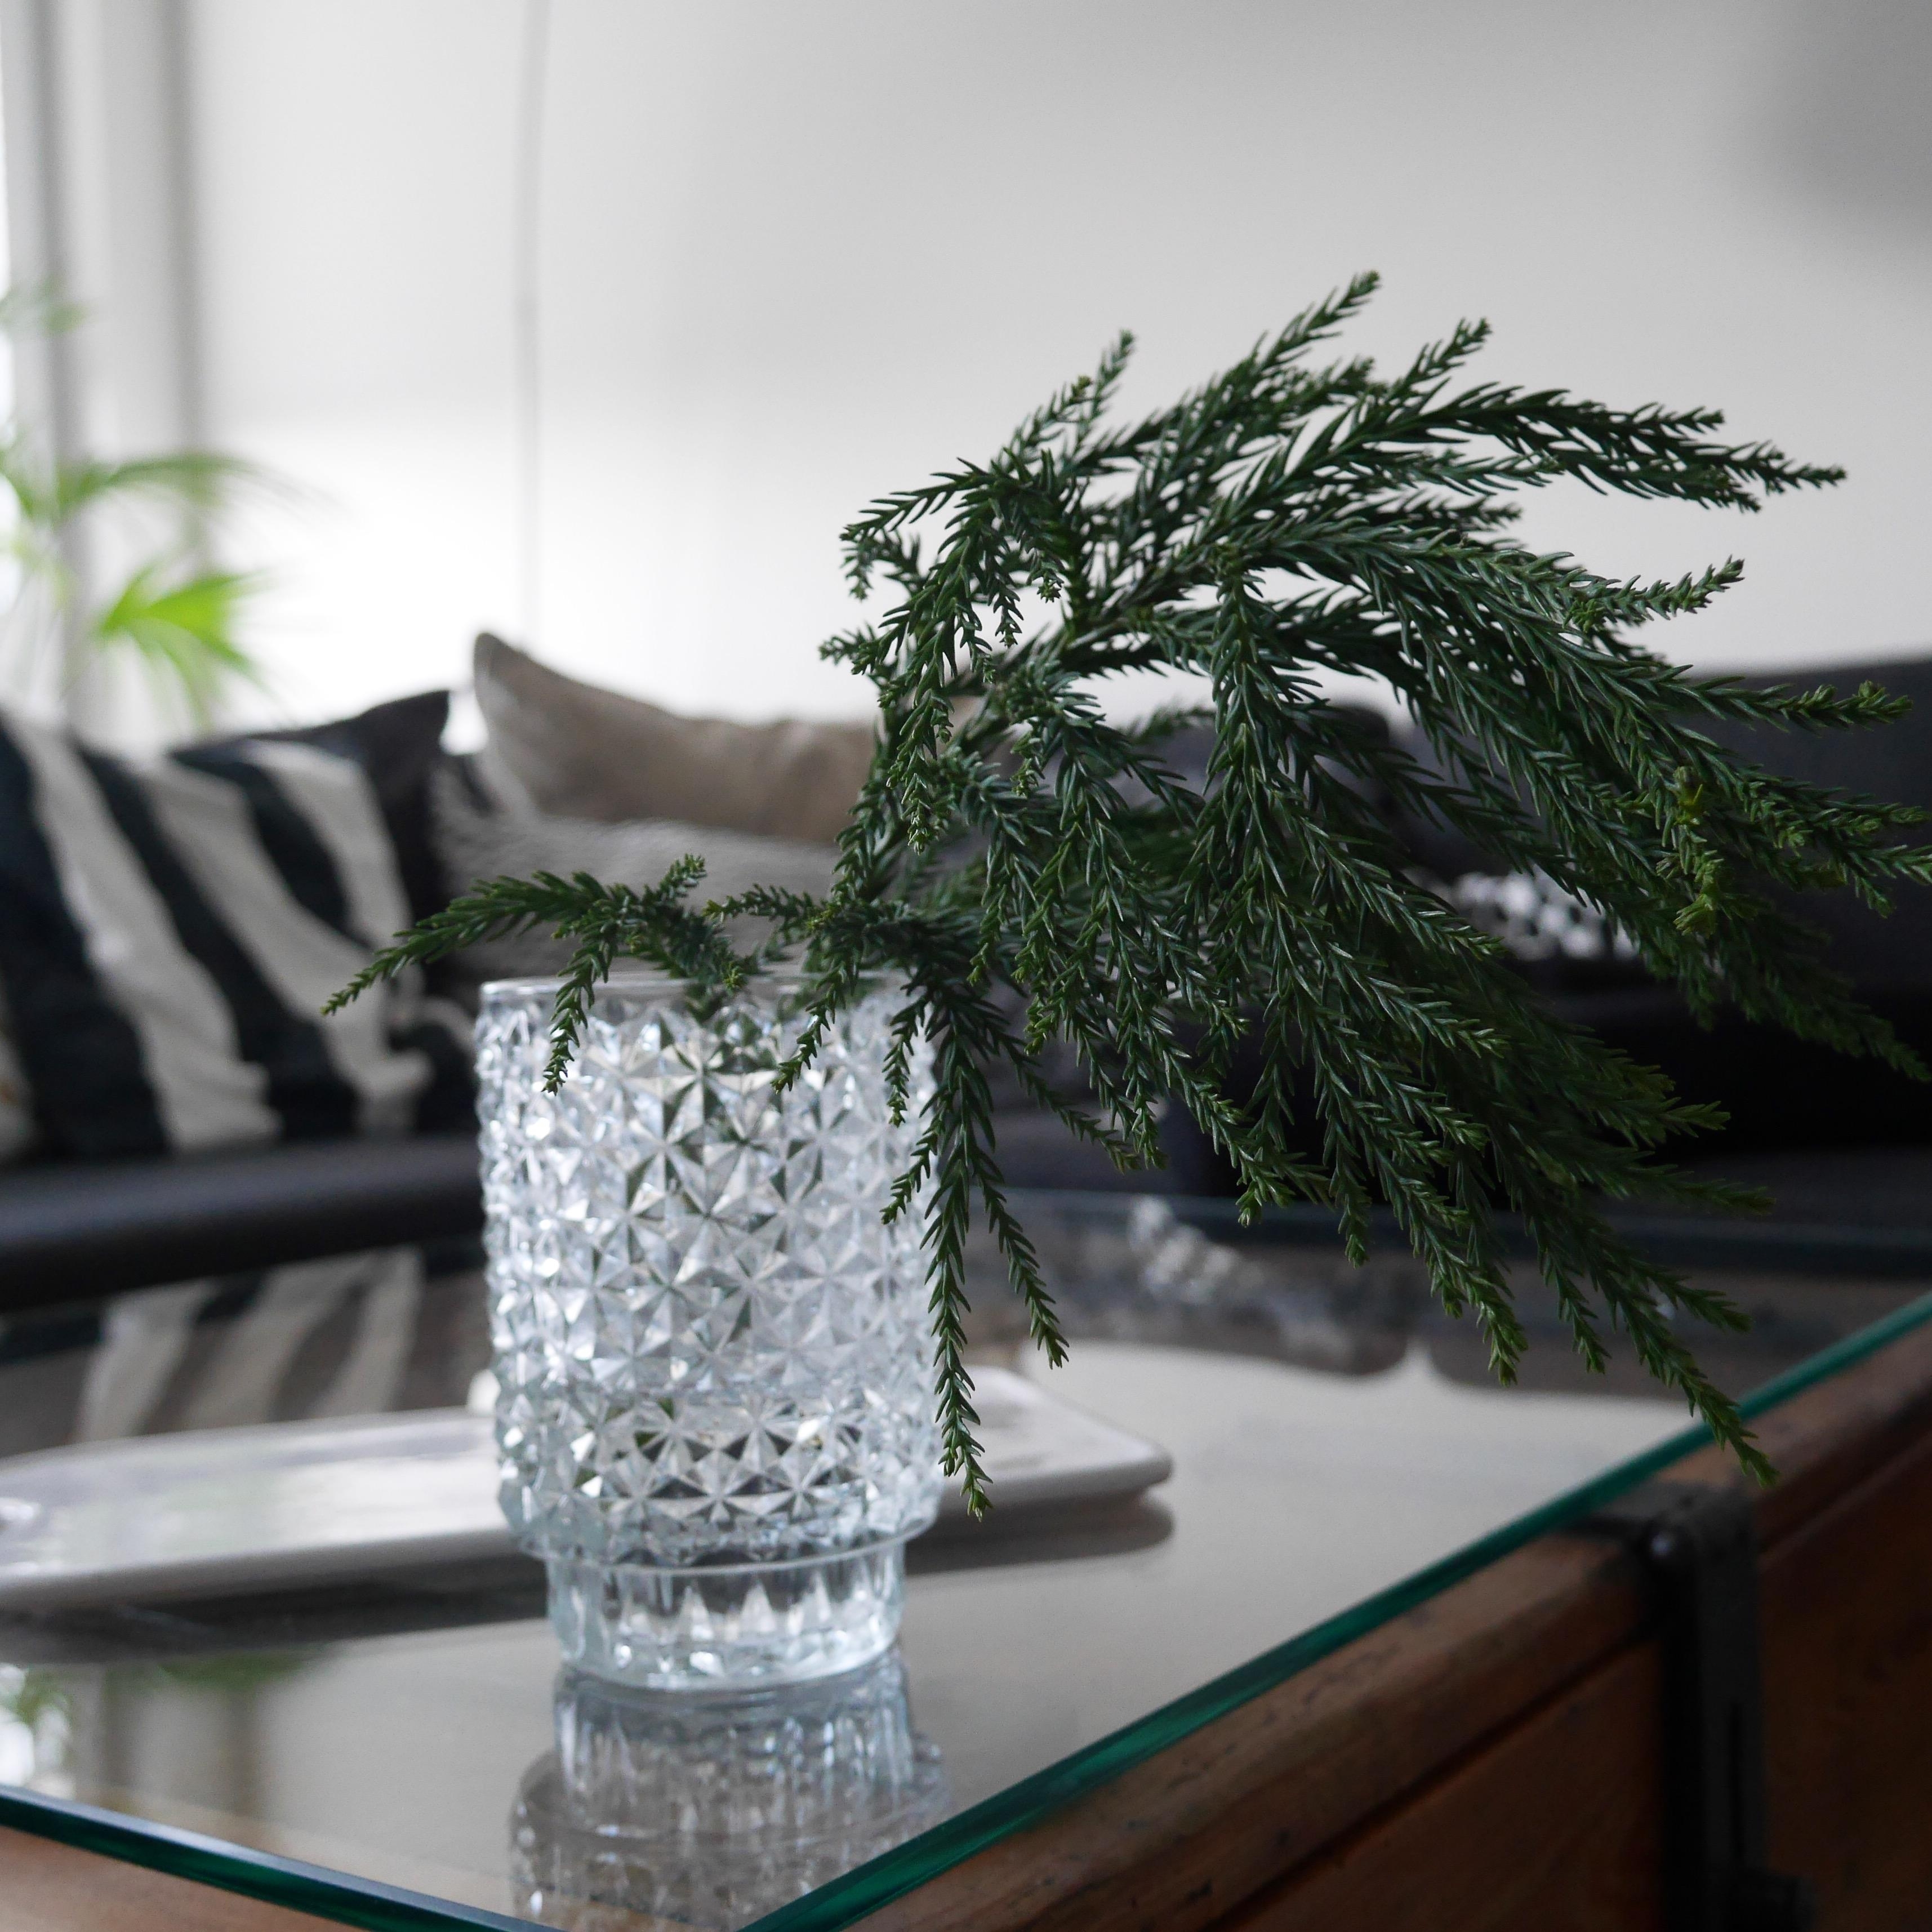 Mit der neuen Vase ist auch die erste Tanne eingezogen! #wintermood #newin #winterinspi